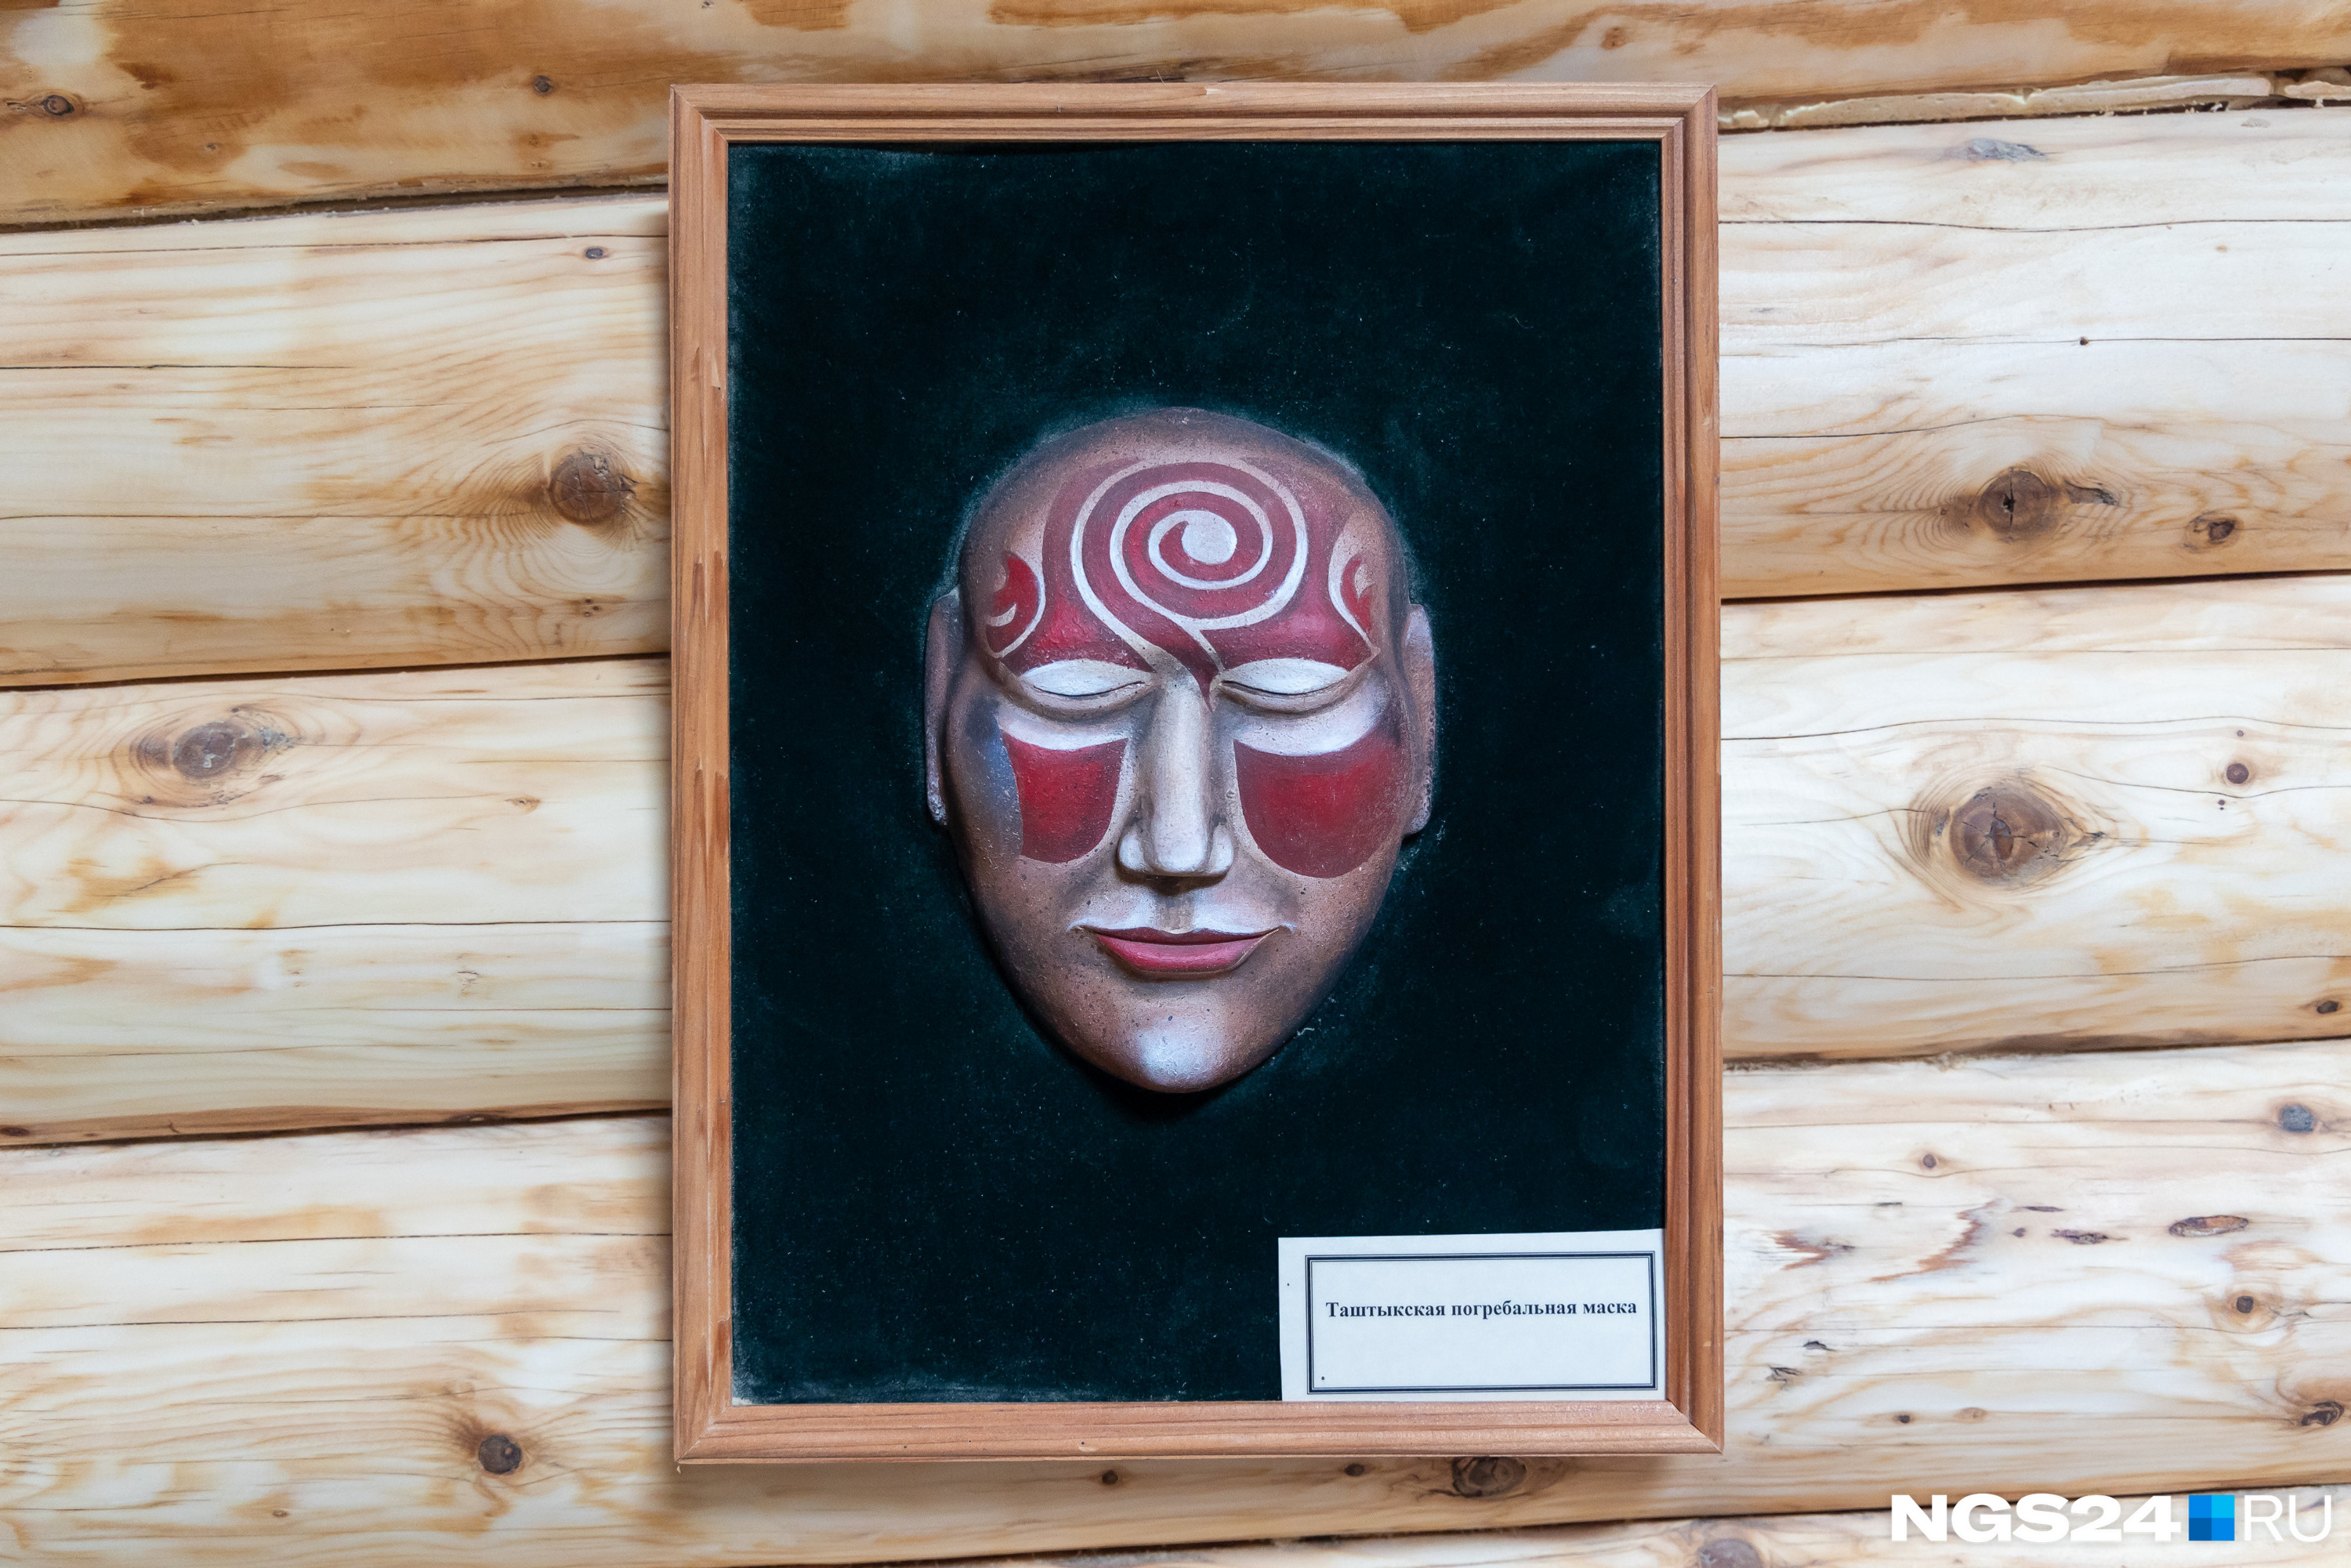 Это погребальная маска в музее возле Салбыкского кургана. Там еще много интересного